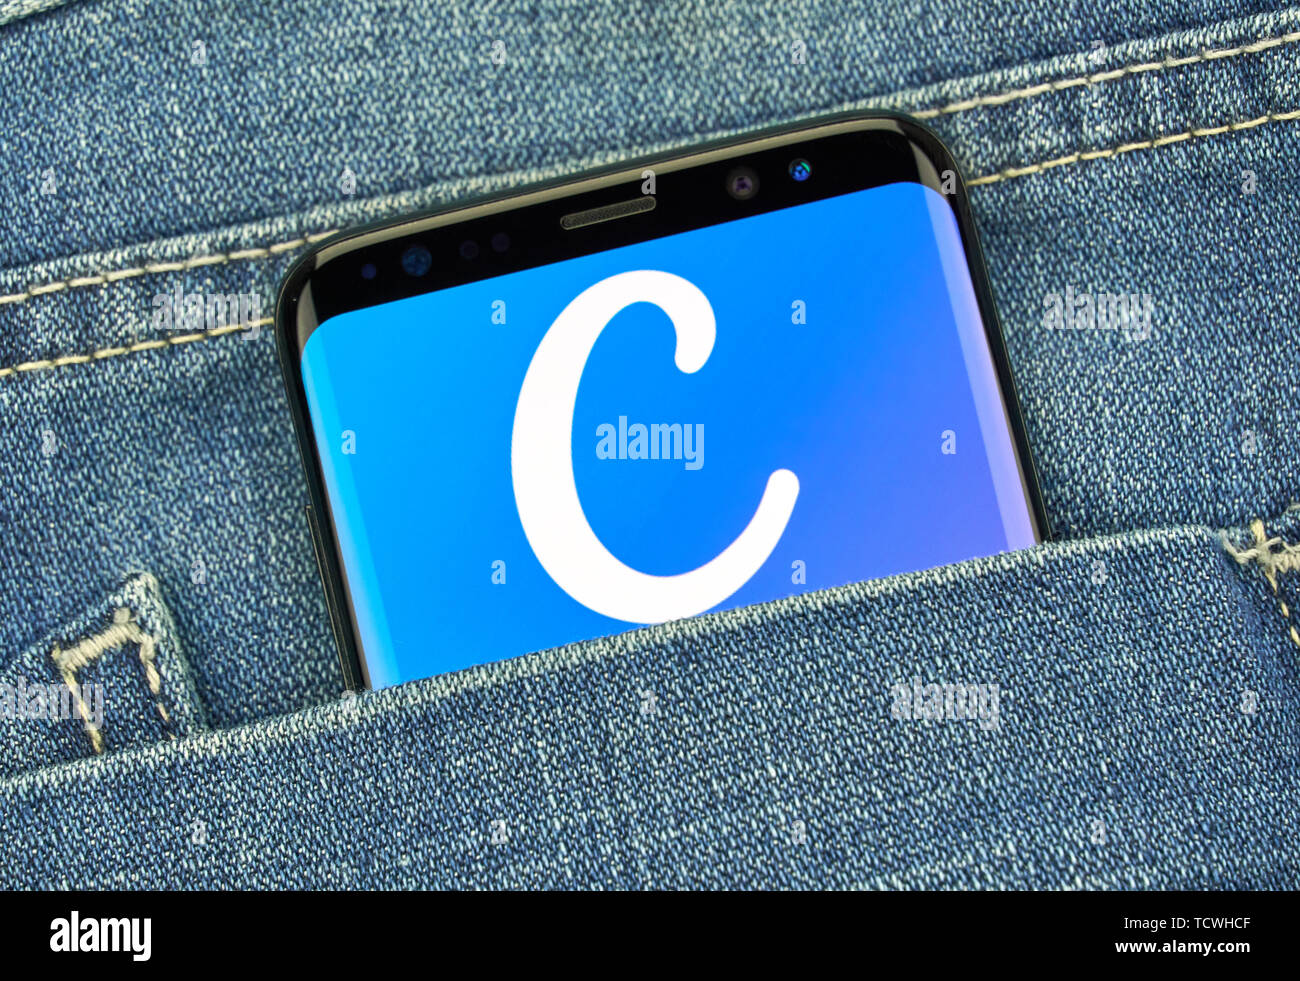 MONTREAL, KANADA - Dezember 23, 2018: Canva android app und Logo auf Samsung S8-Bildschirm. Canva ist ein grafik-design Anwendung, Werkzeug und Website Stockfoto